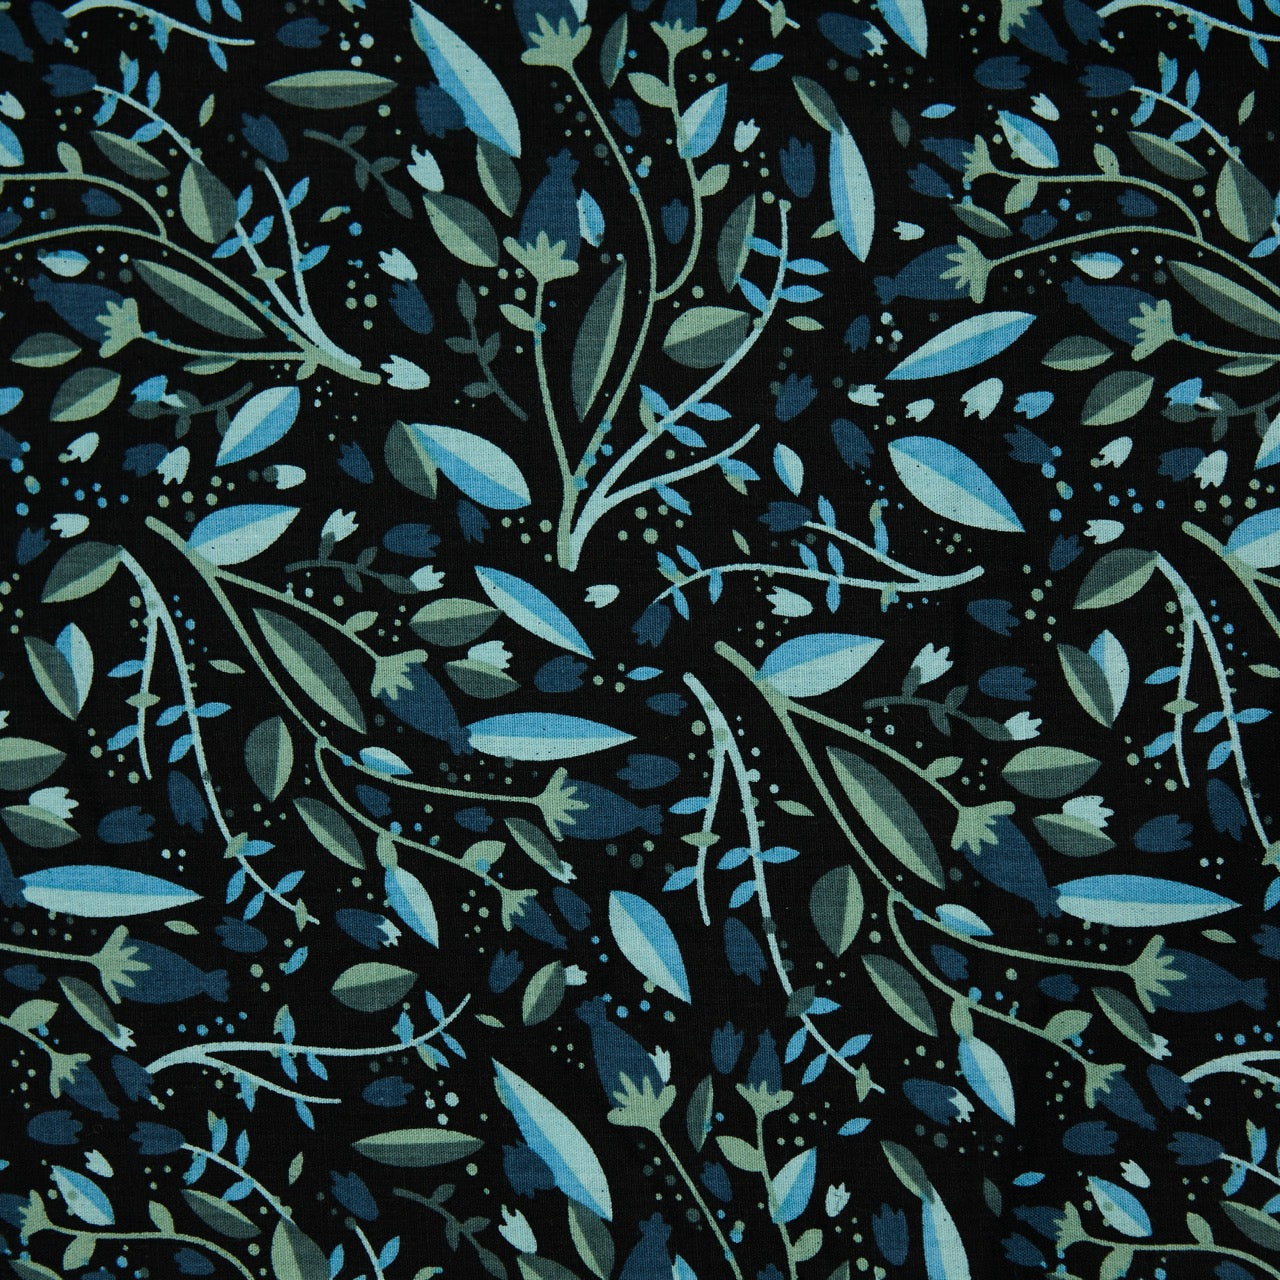 Cotton Floral - Tulips - Blue (detail)